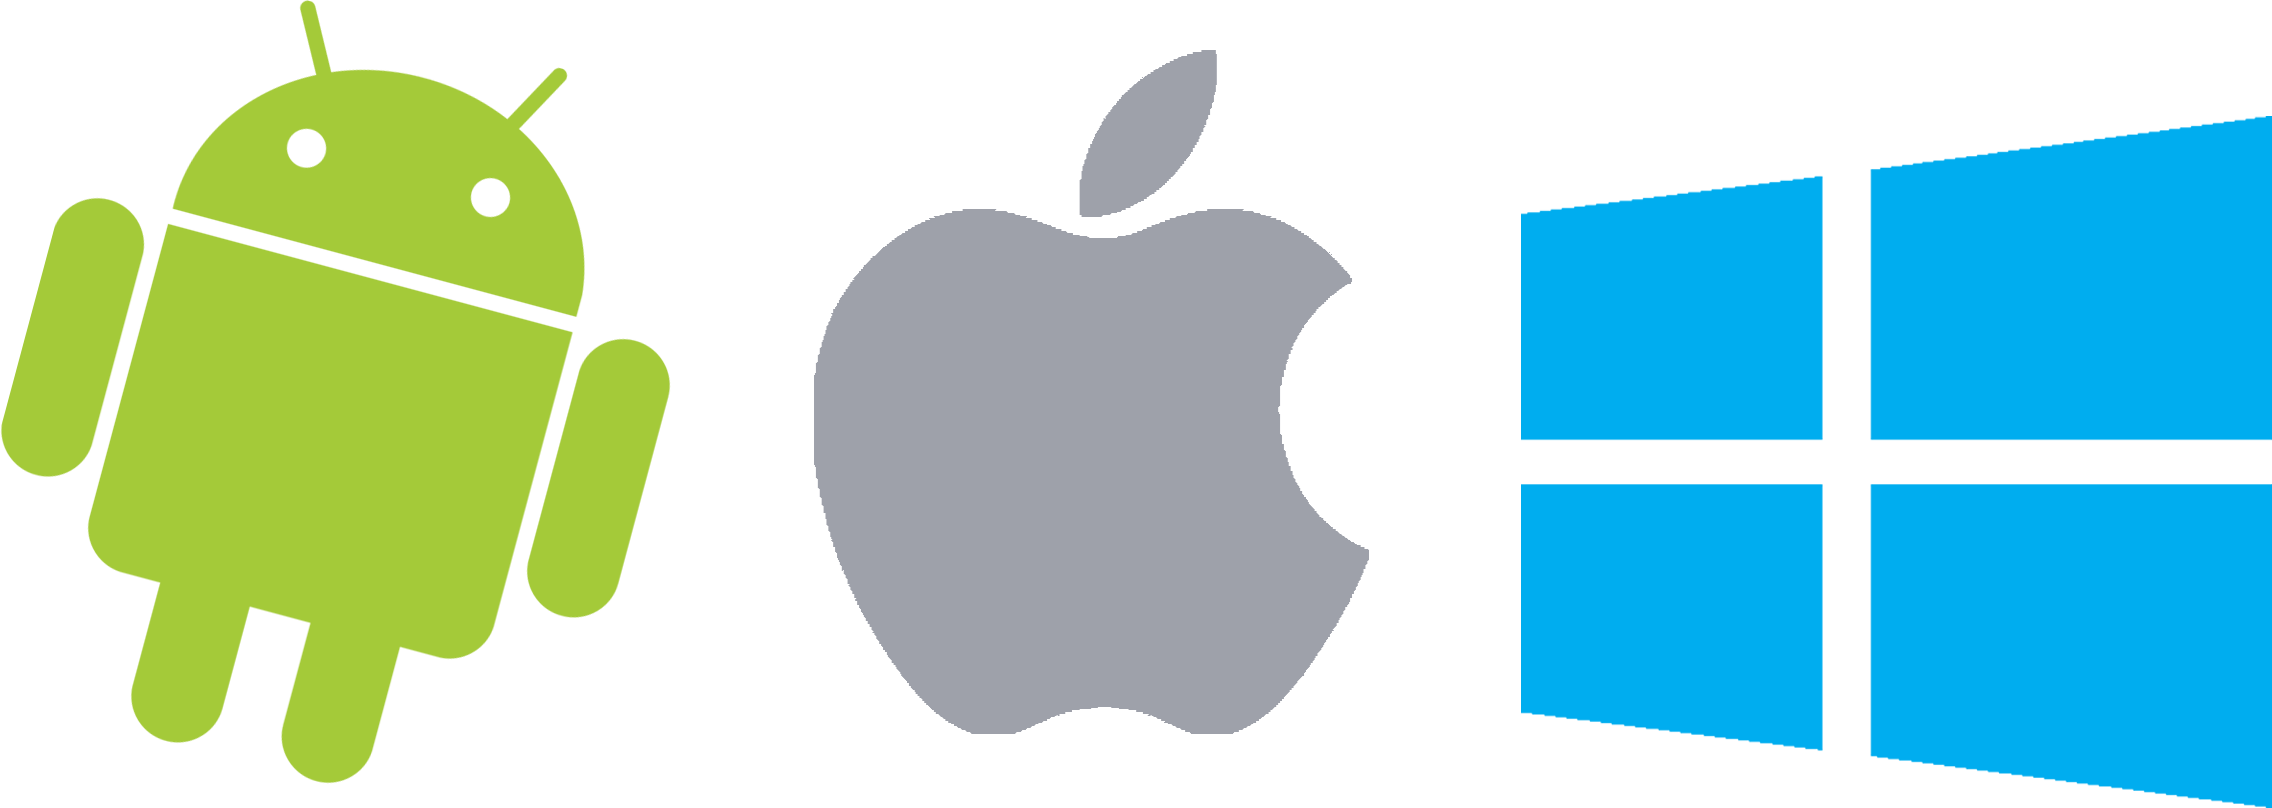 Android, Apple, Windows logó